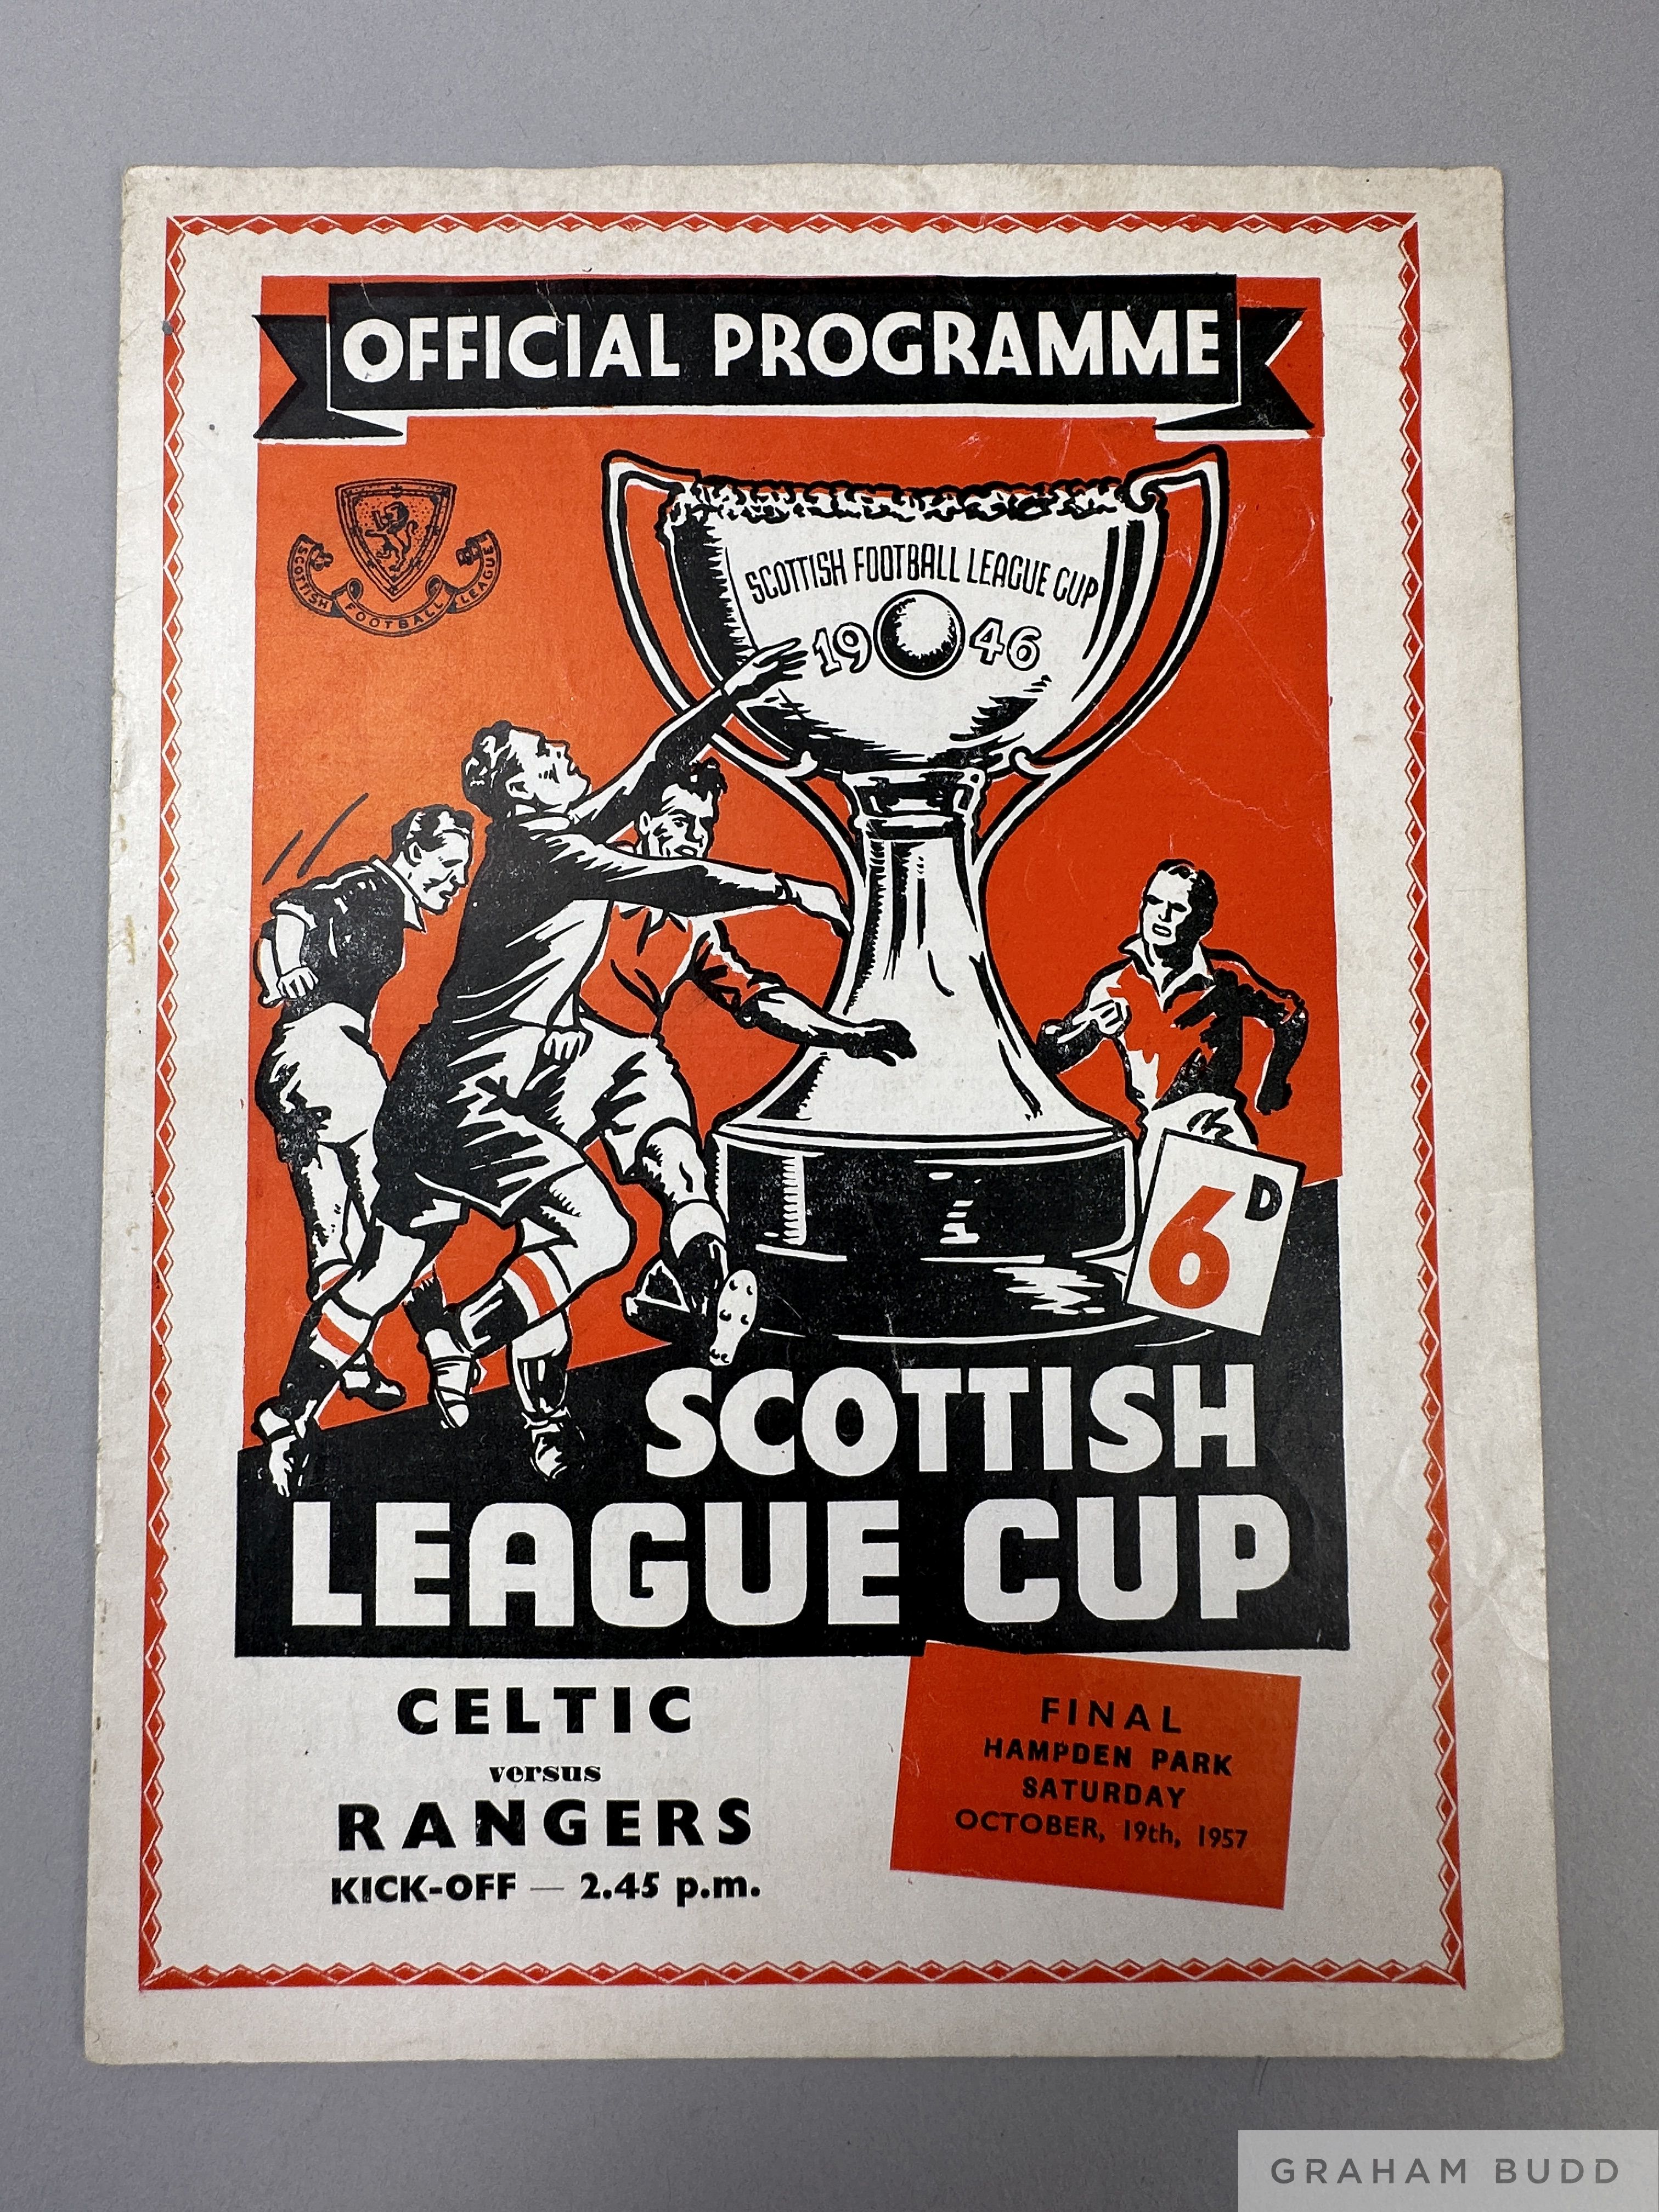 Rangers v. Celtic Scottish League Cup Final match programme, 1957